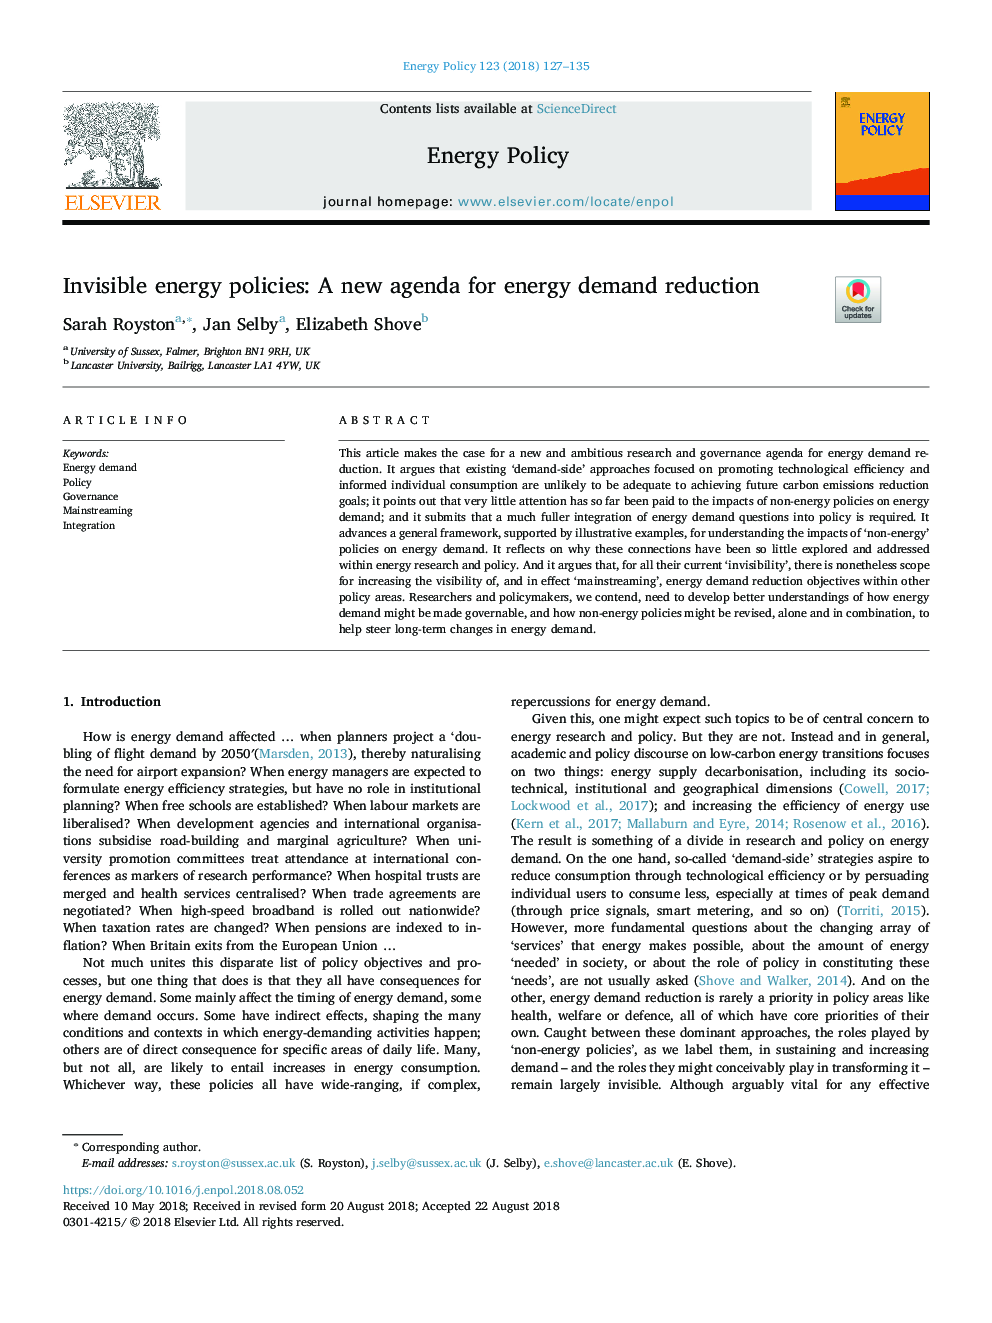 سیاست های نامرئی انرژی: دستور کار جدید برای کاهش تقاضای انرژی